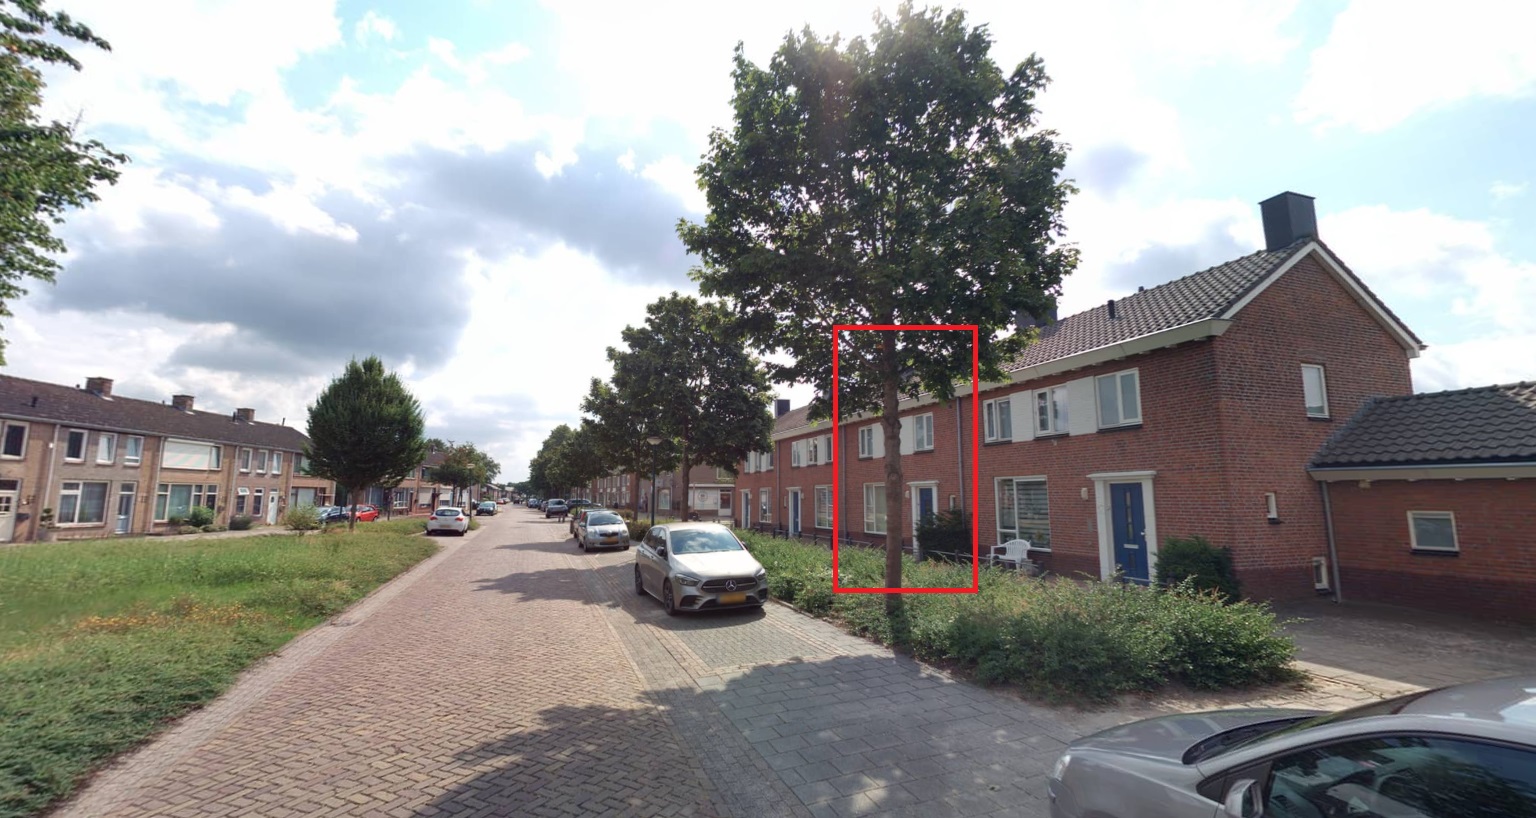 Berndijksestraat 52, 5171 BD Kaatsheuvel, Nederland